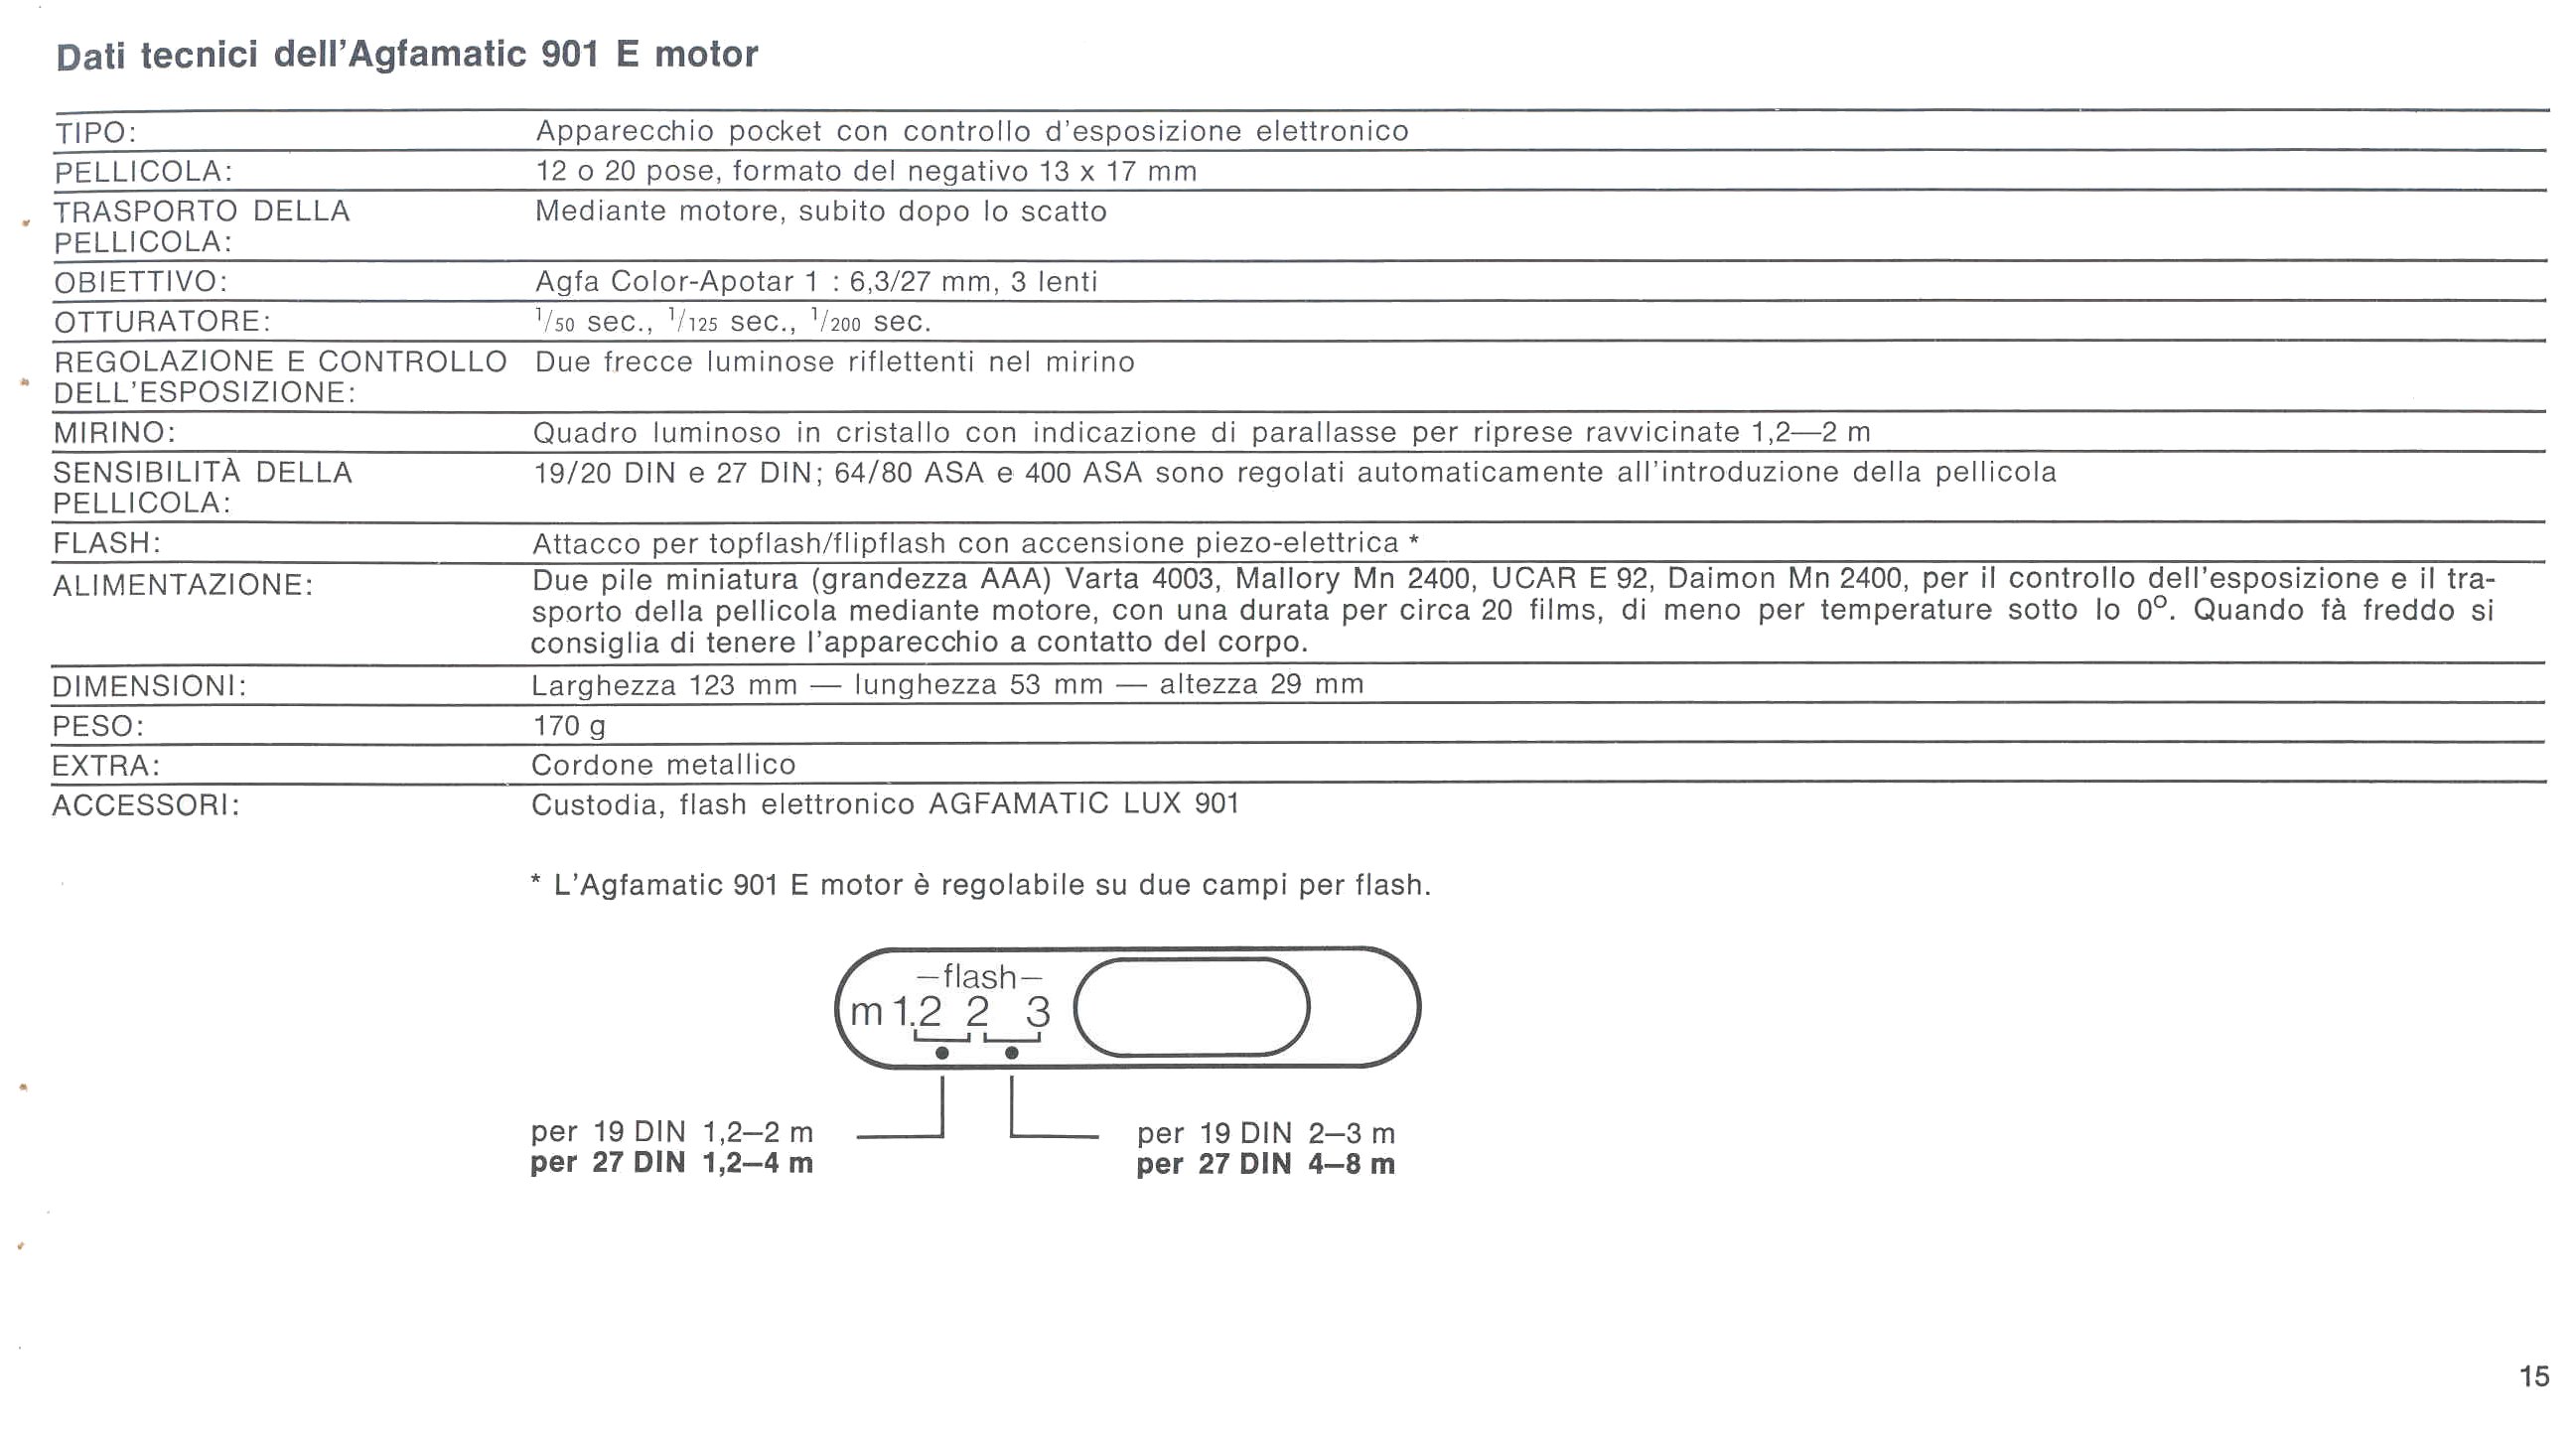 Manual de instrucciones Agfa Agfamatic motor 901 sensor User Manual instrucciones y1053 